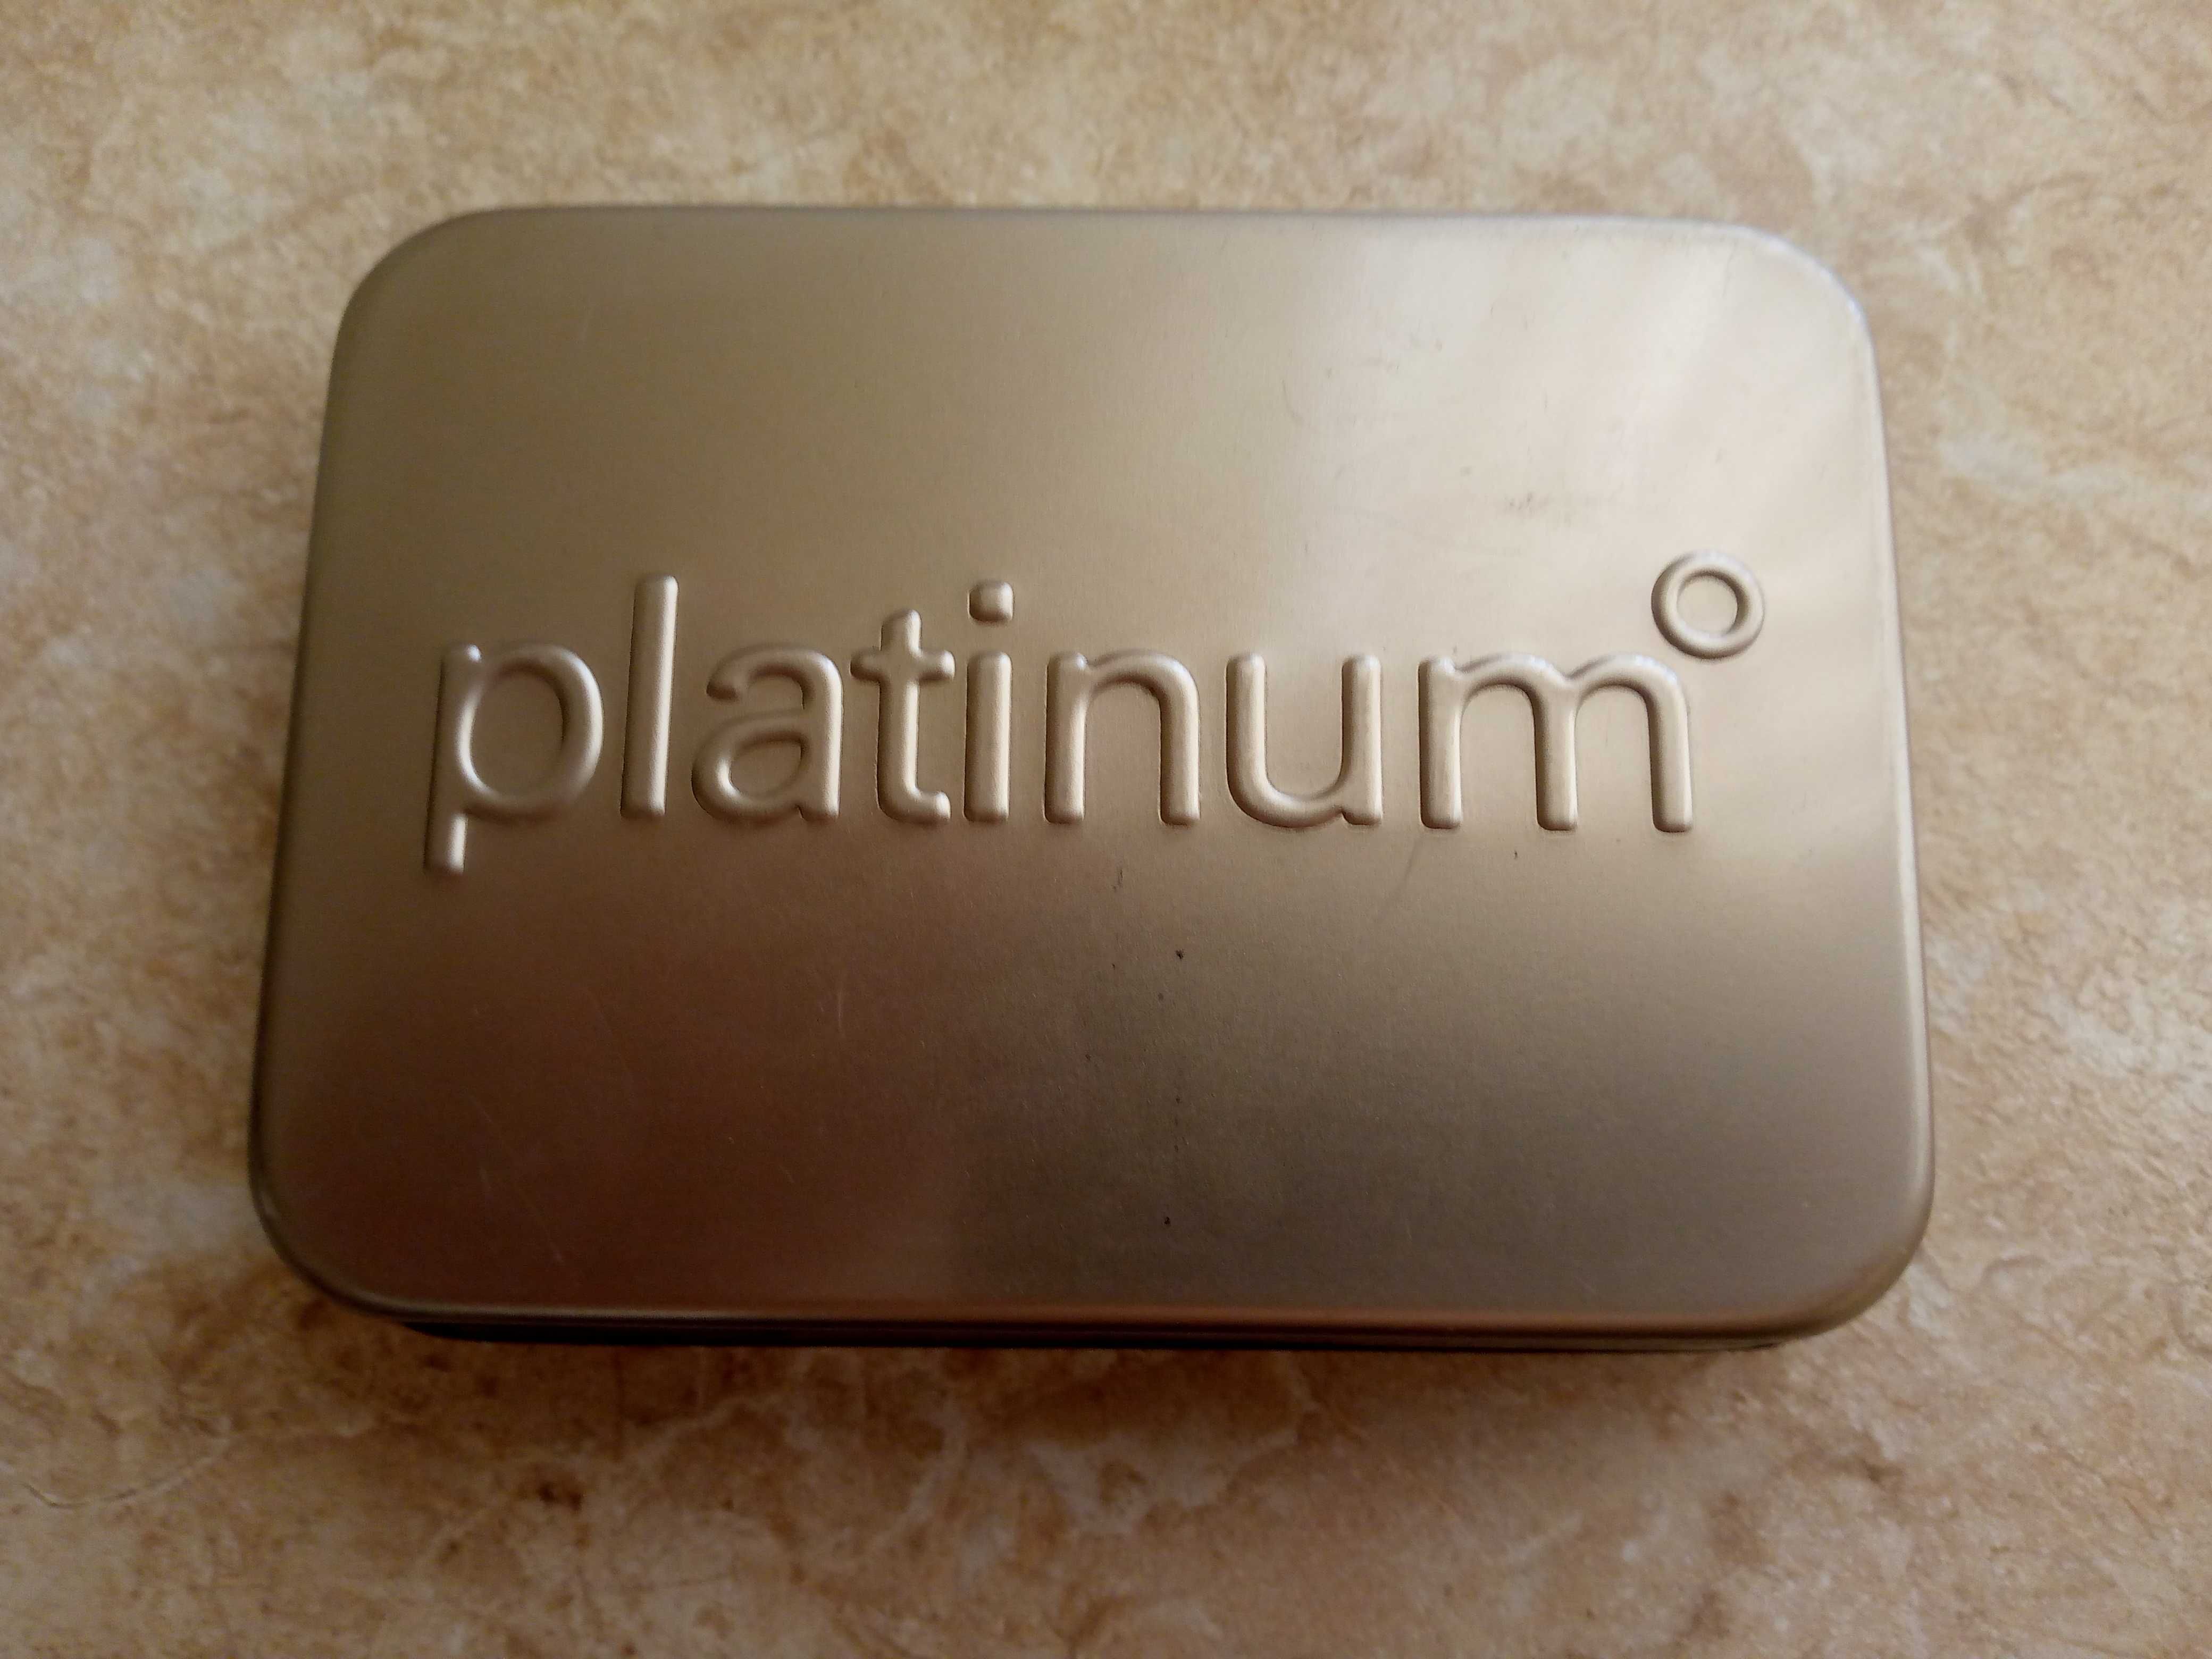 Фирменный набор для ухода и красоты Platinum качественный металл